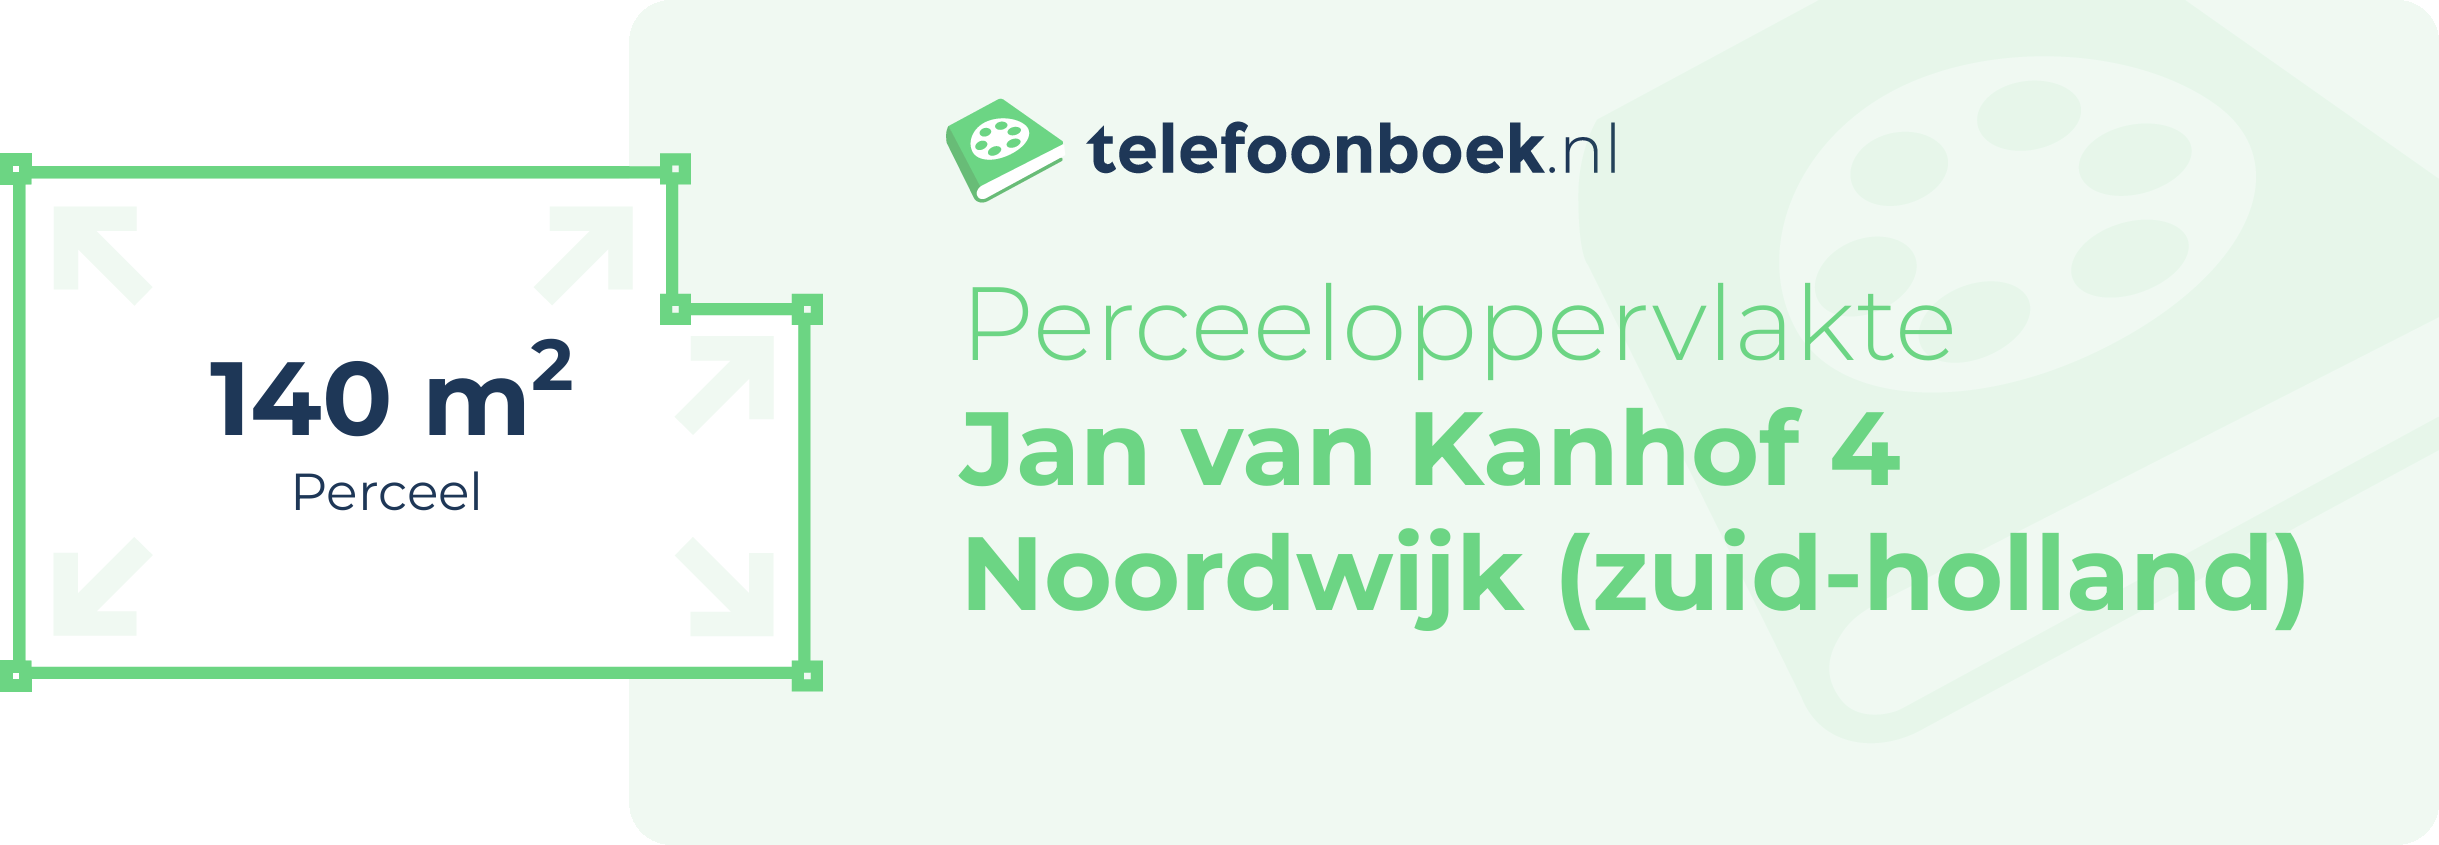 Perceeloppervlakte Jan Van Kanhof 4 Noordwijk (Zuid-Holland)